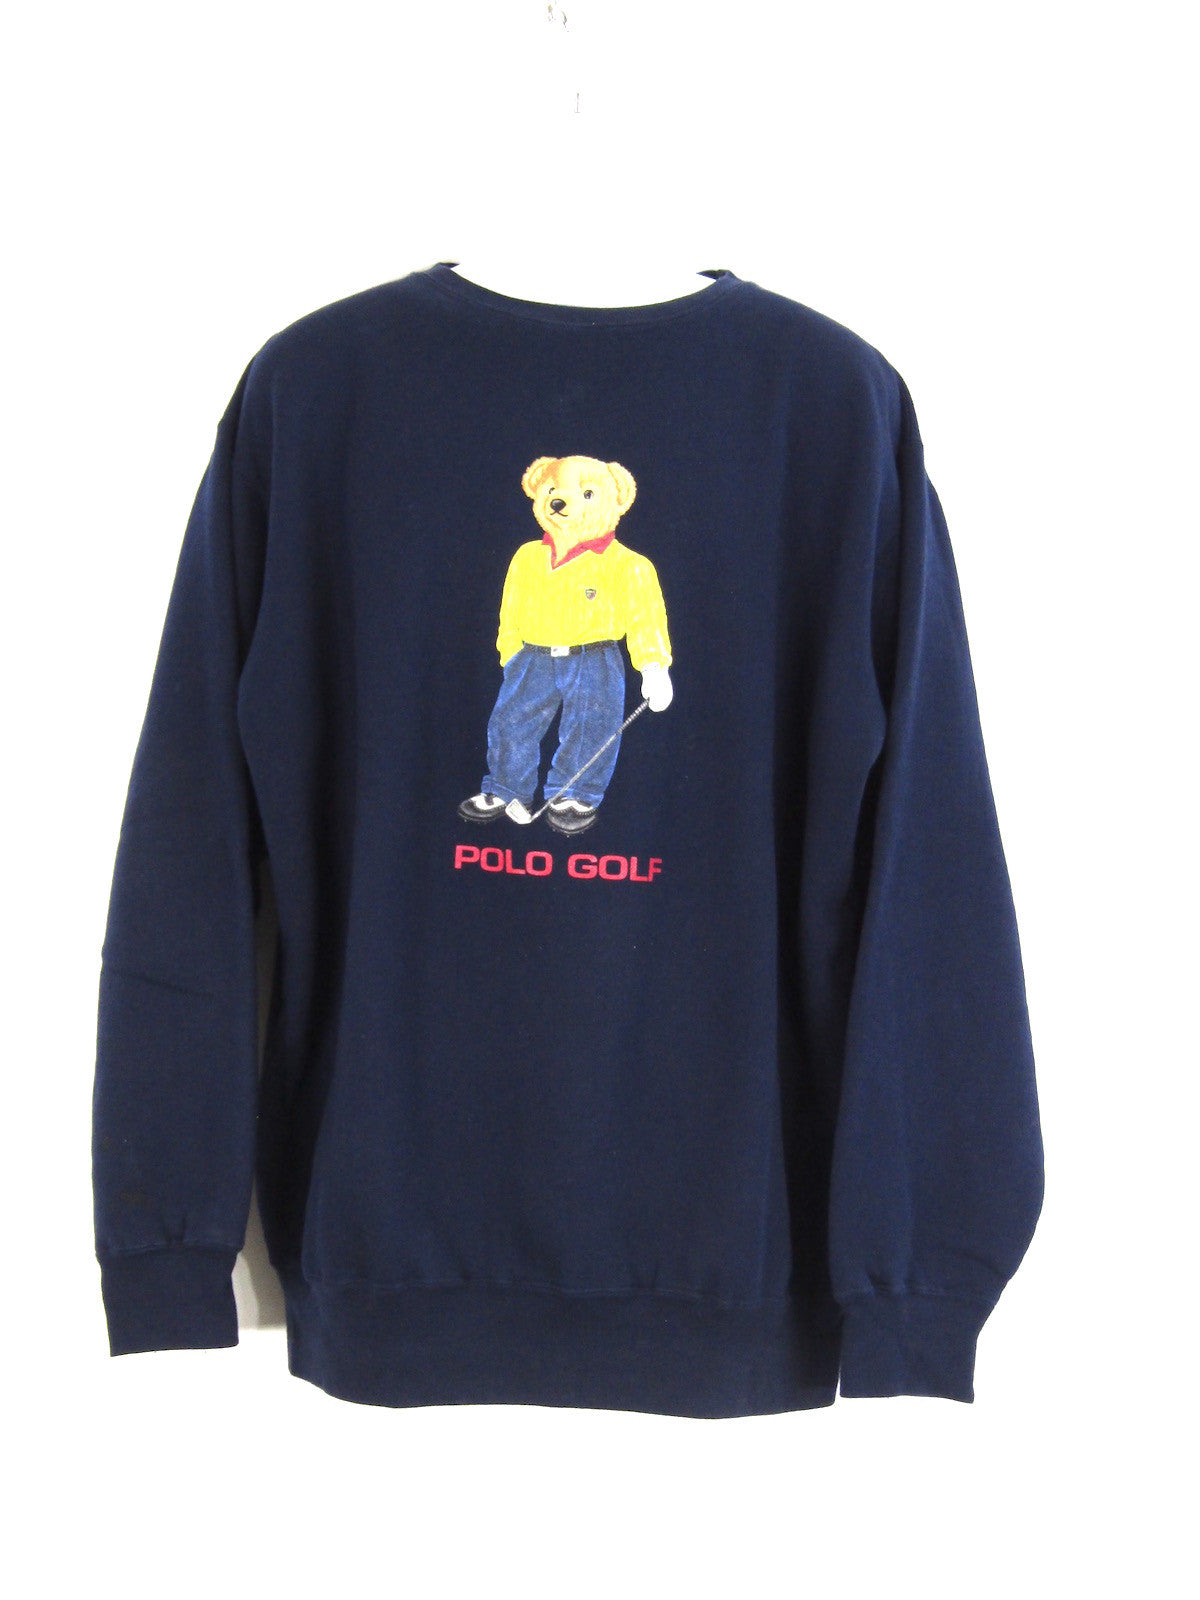 polo teddy bear sweater mens